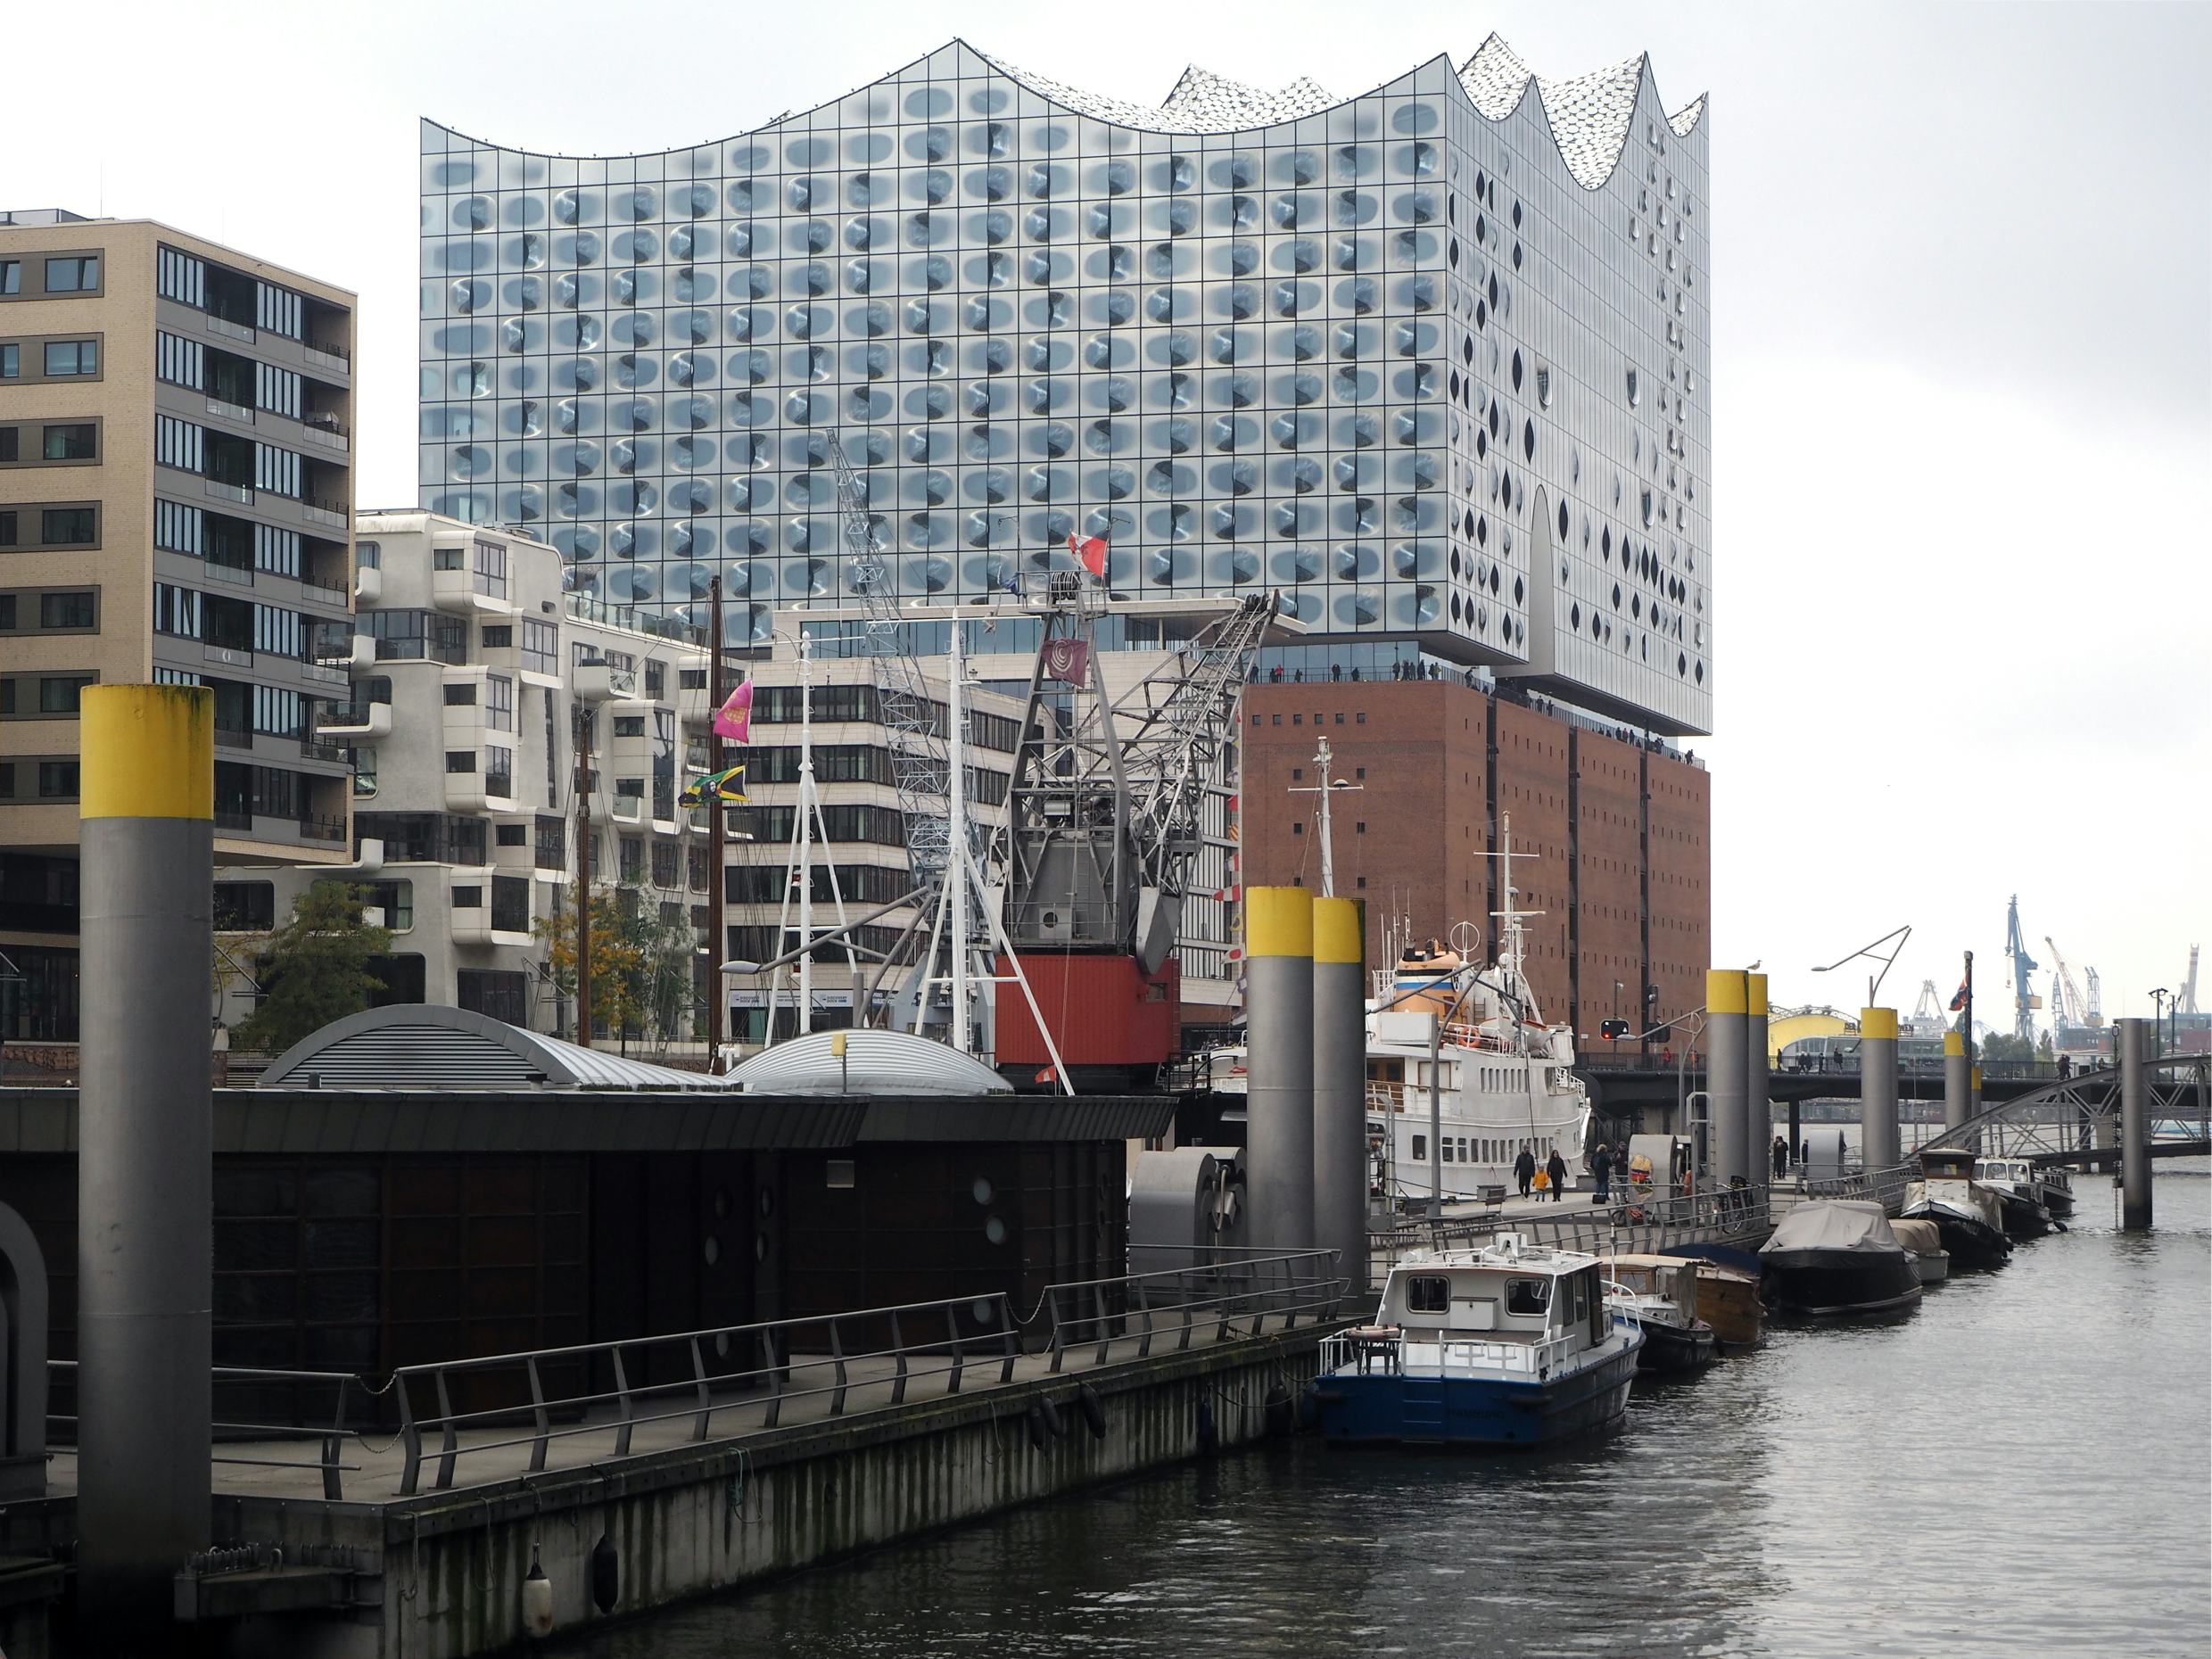 Architectuurreis Hamburg: HafenCity met uitzicht op de Elbphilharmonie door Herzog & de Meuron. Beeld Jo Janssen